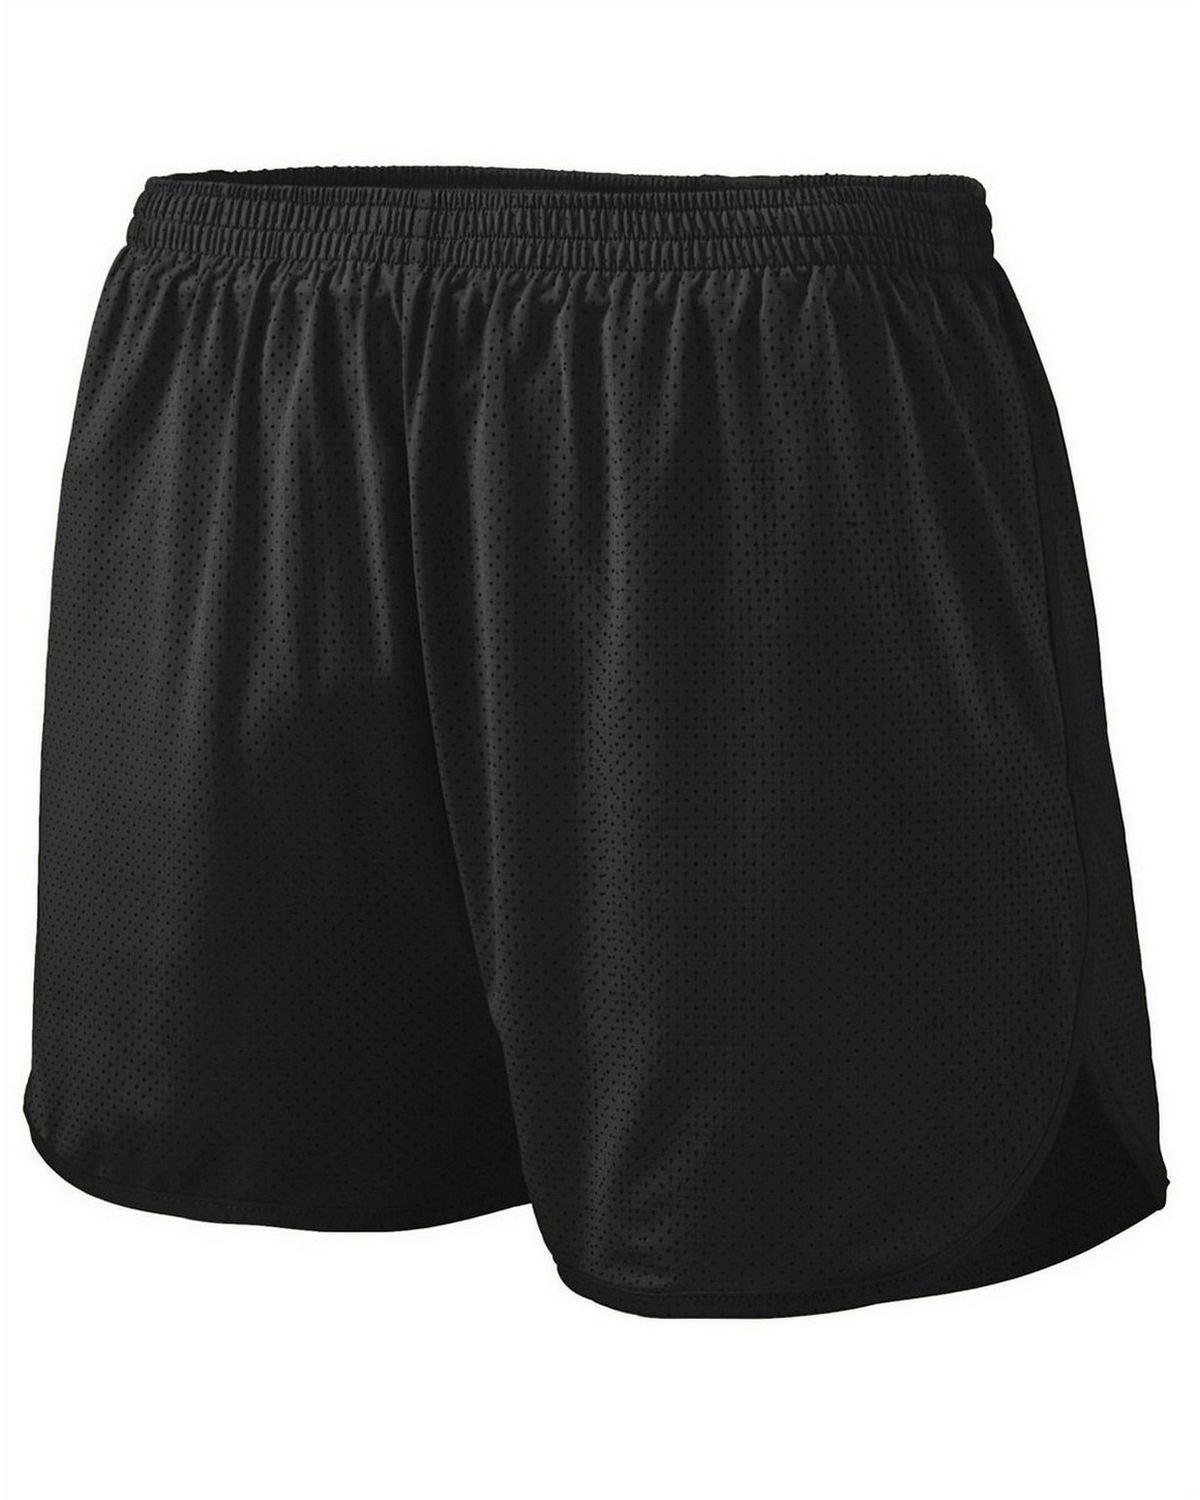 Augusta Sportswear 338 Men's Wicking Poly/Span Short